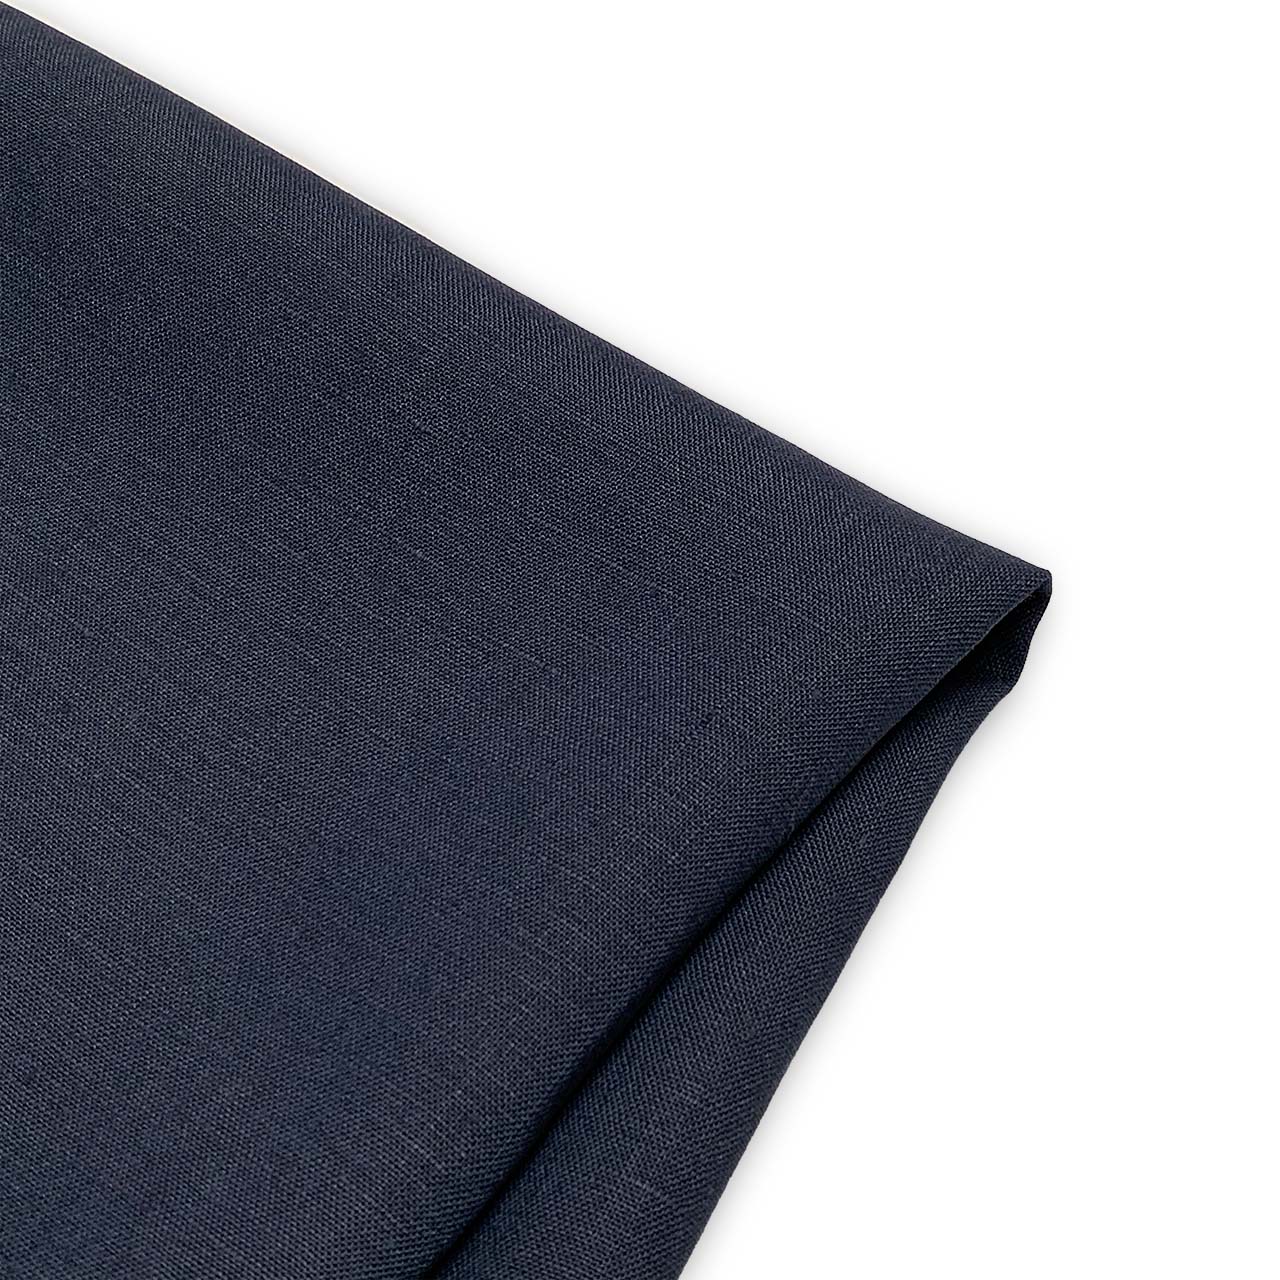 linen fabric heavy weight indigo navy linen - moda linen fabric collection